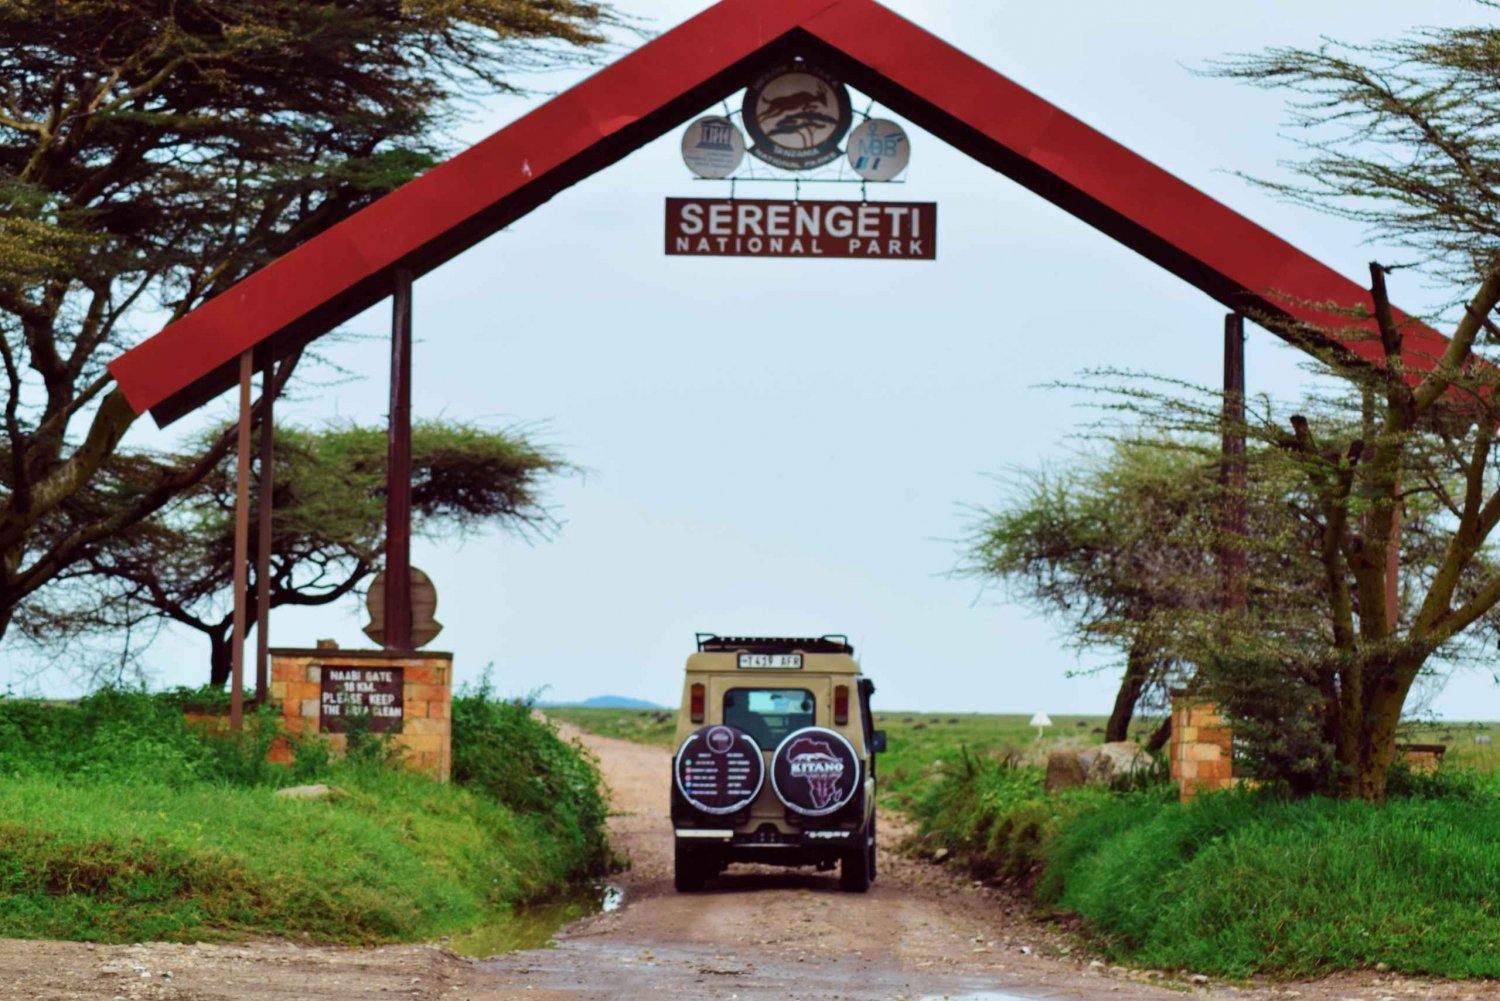 3 Daagse Serengeti Safari vanuit Nairobi